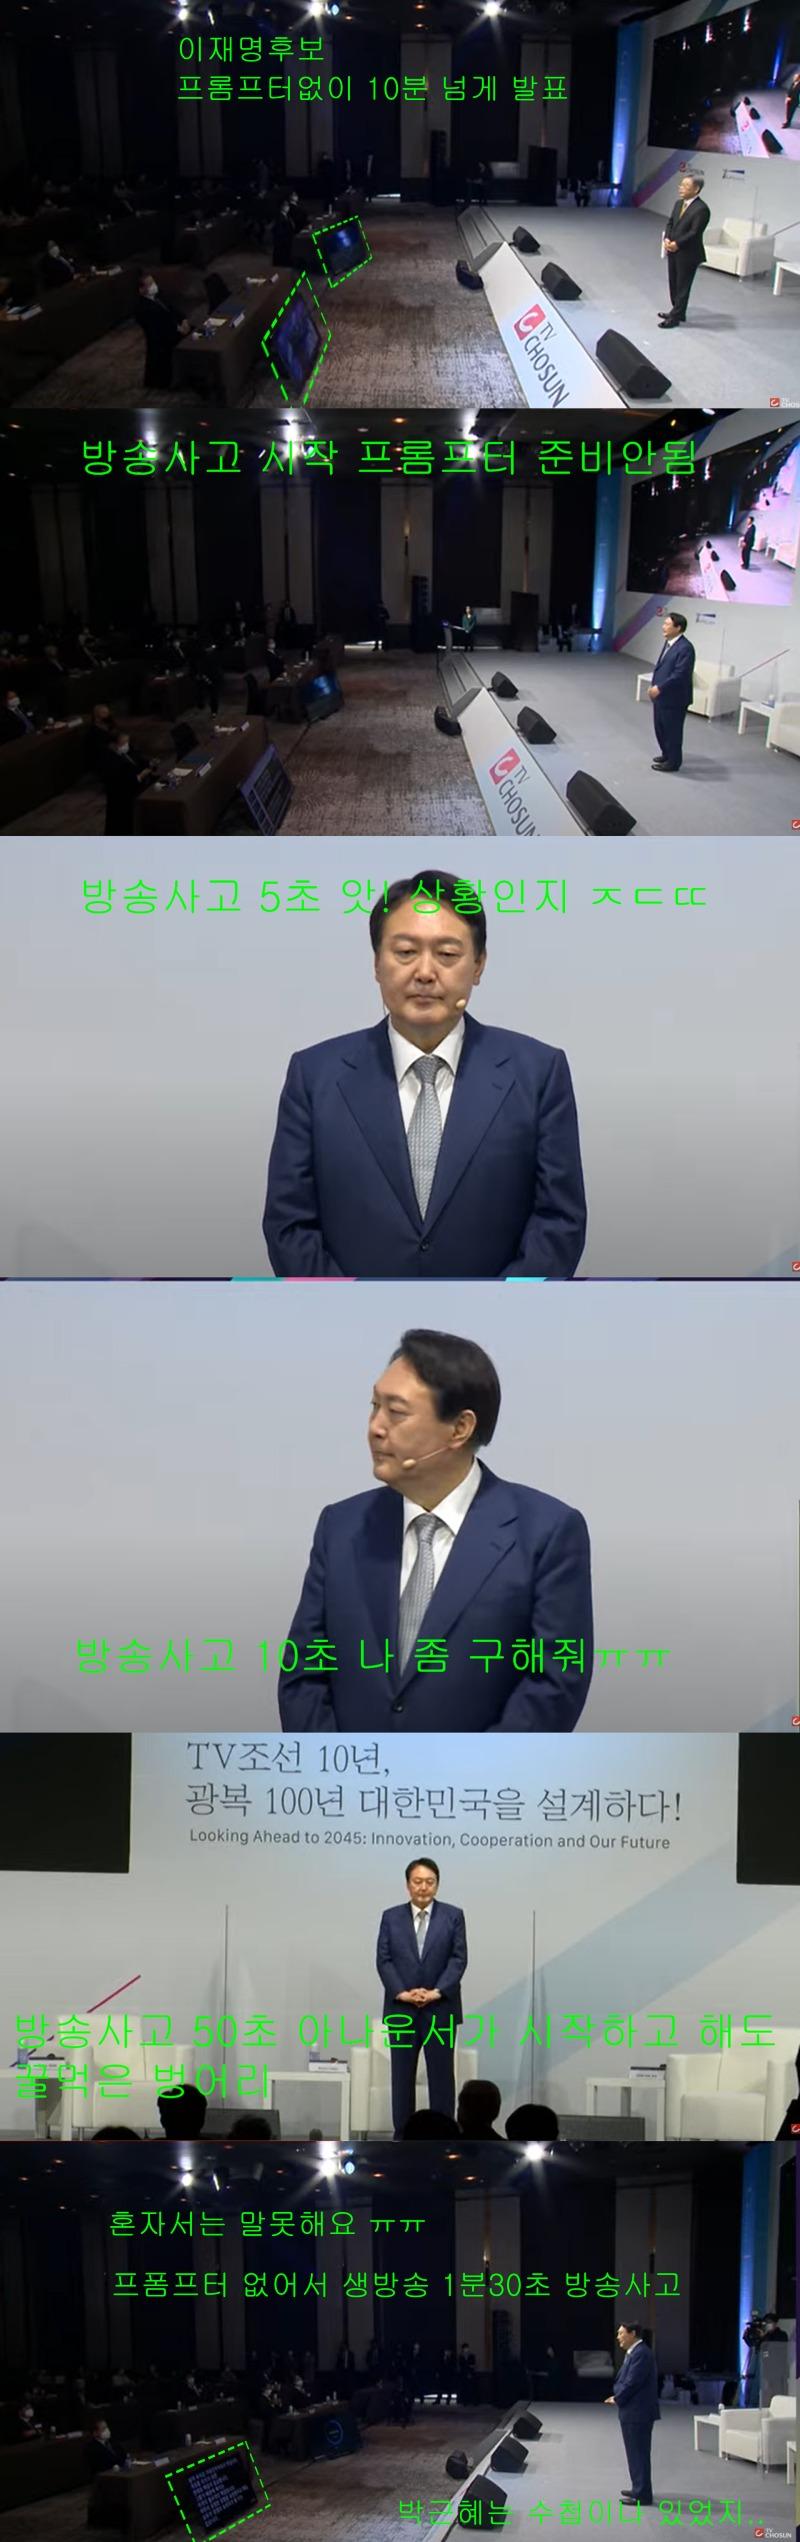 윤석열 생방송중 2분간 침묵 방송사고.jpg